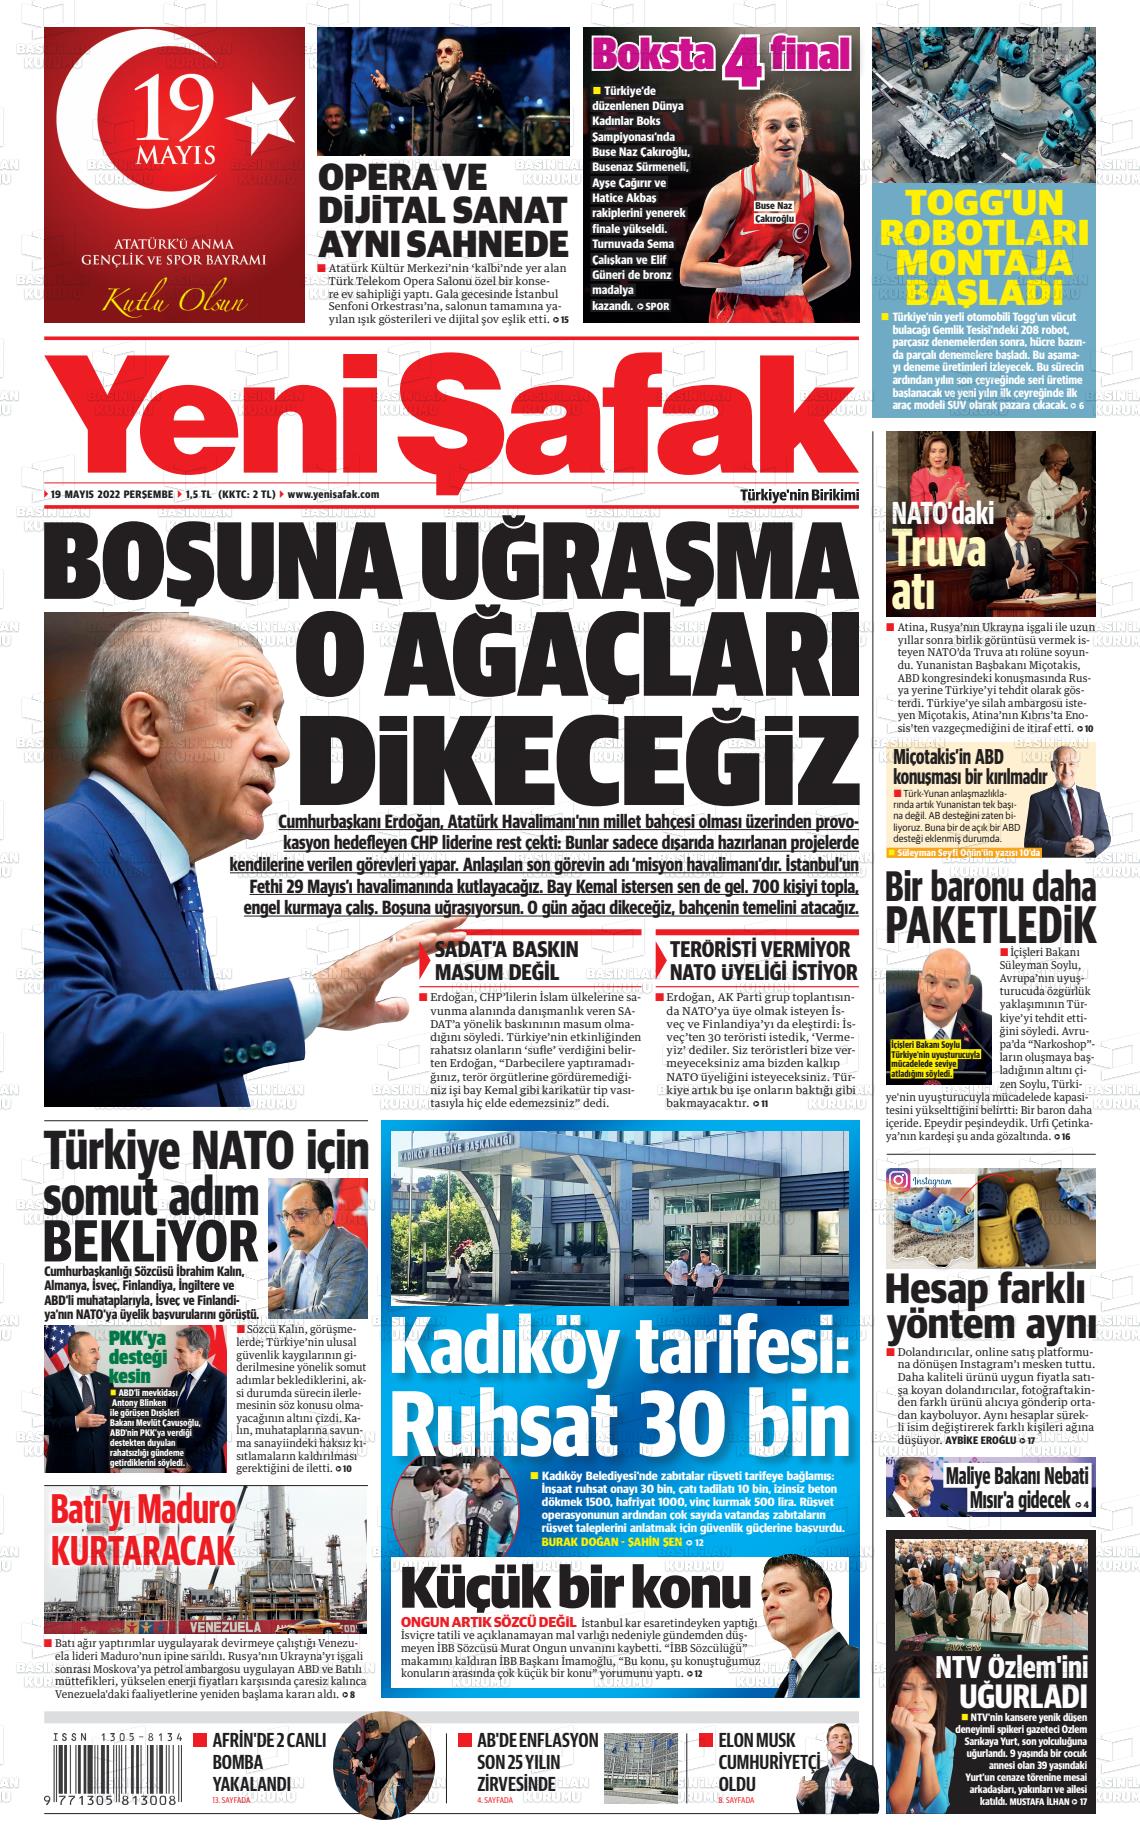 19 Mayıs 2022 Yeni Şafak Gazete Manşeti